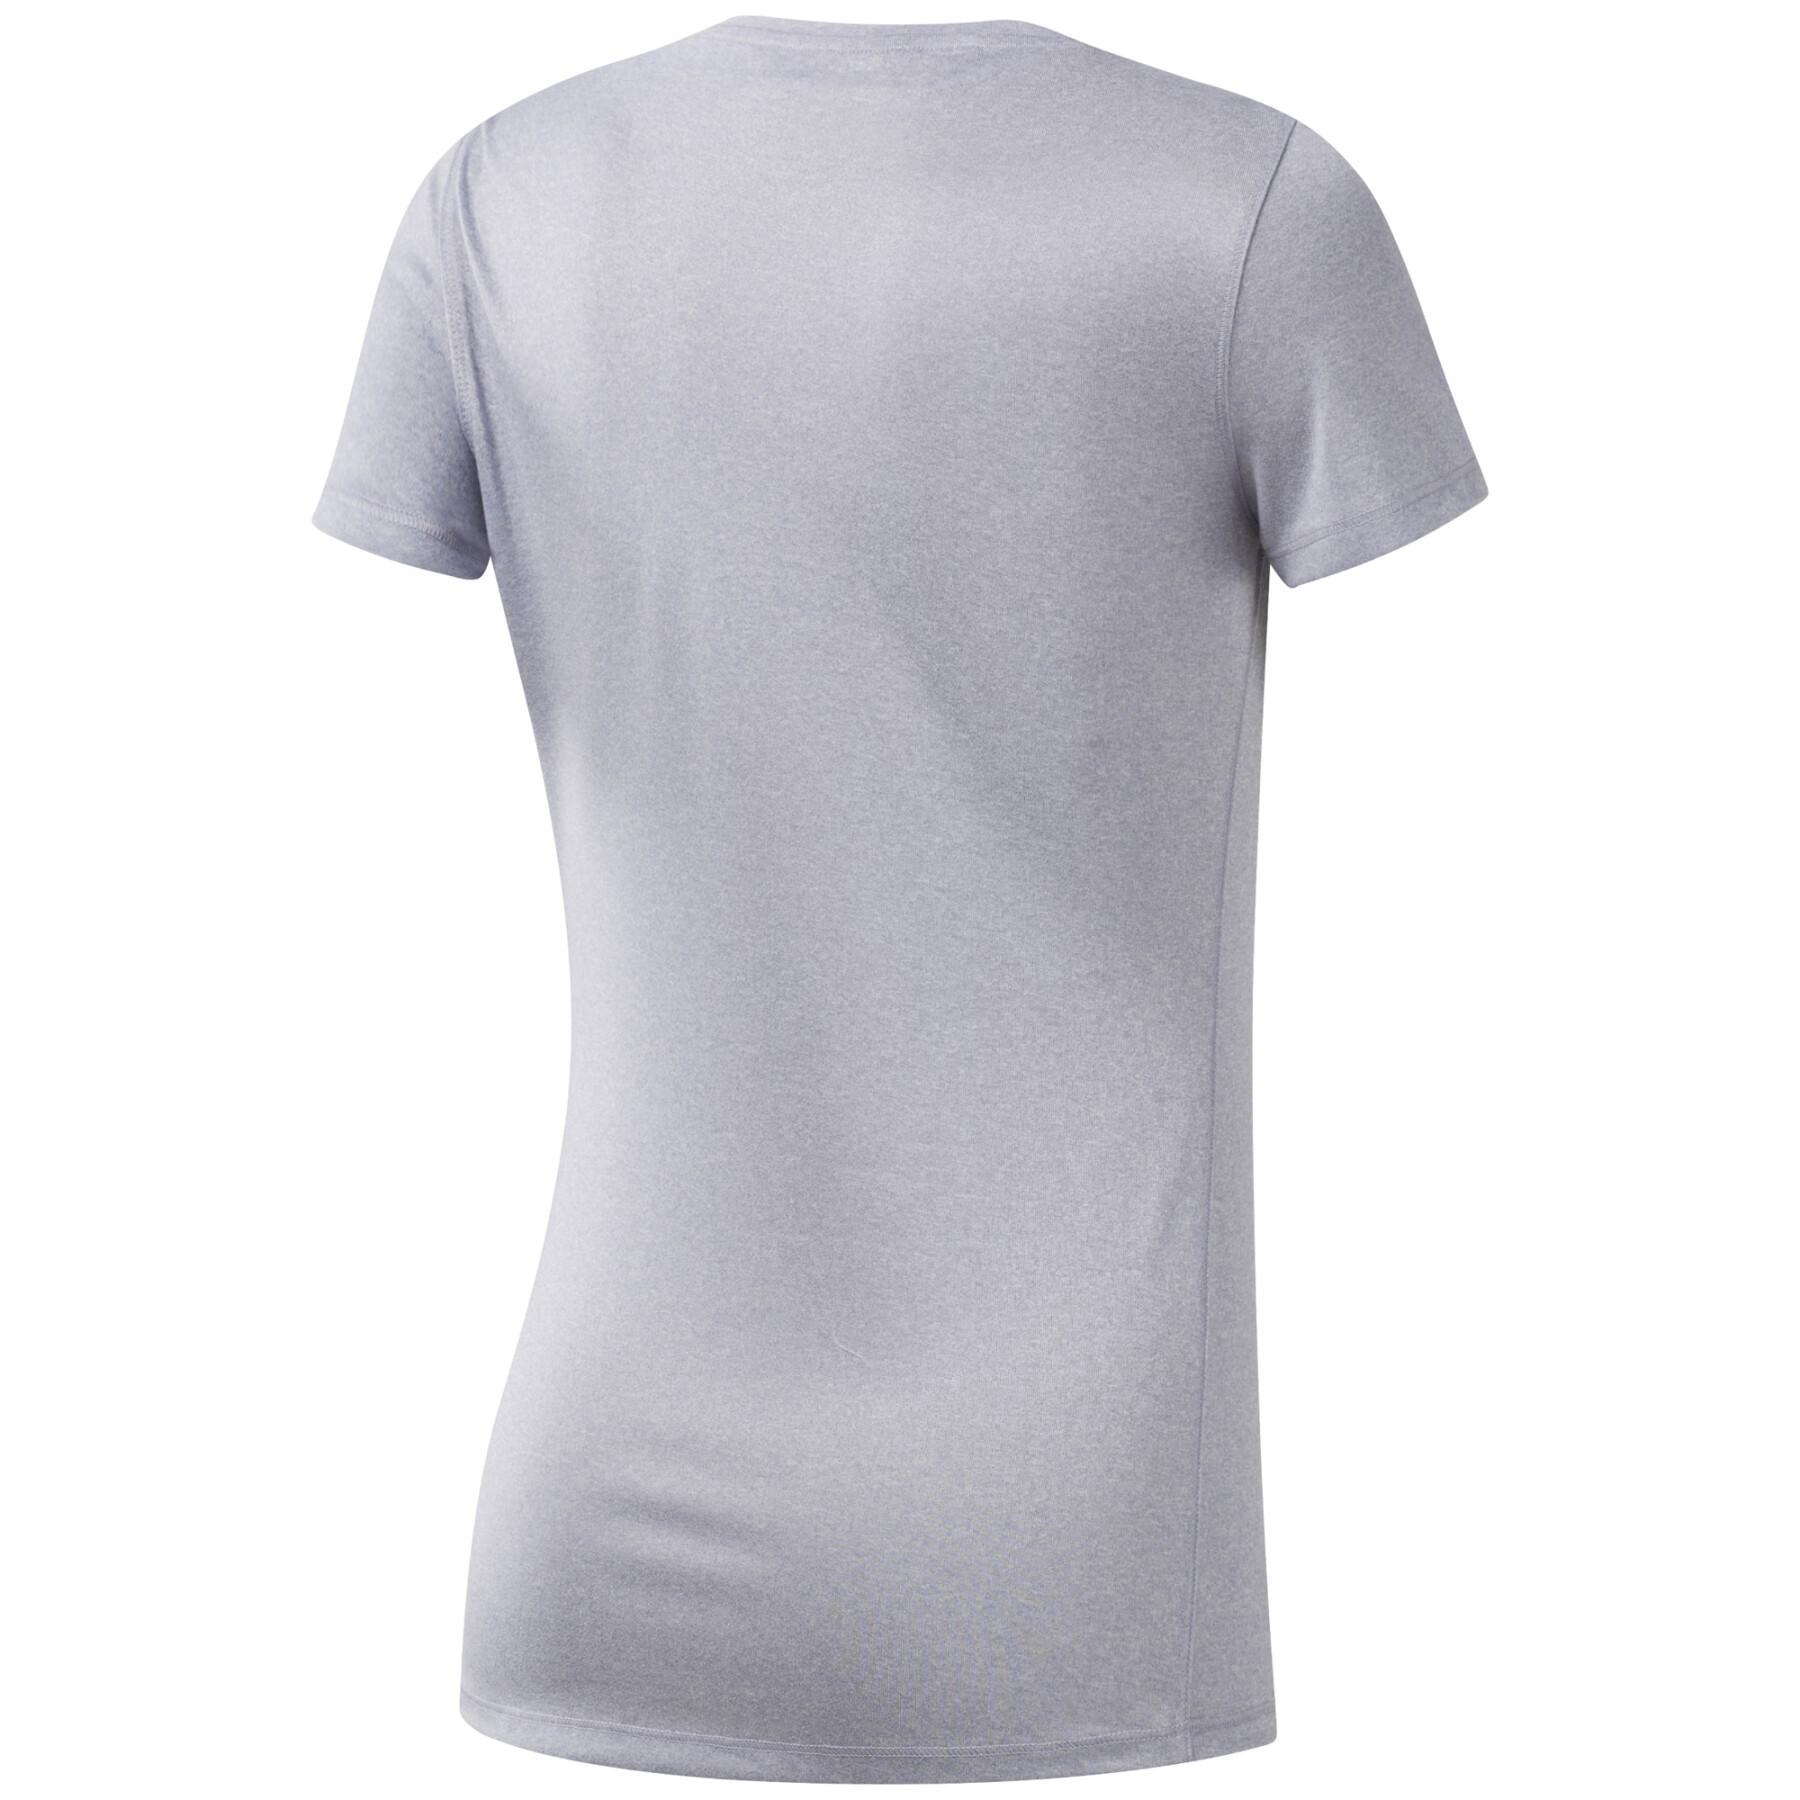 Reflective T-shirt for women Reebok Running OS